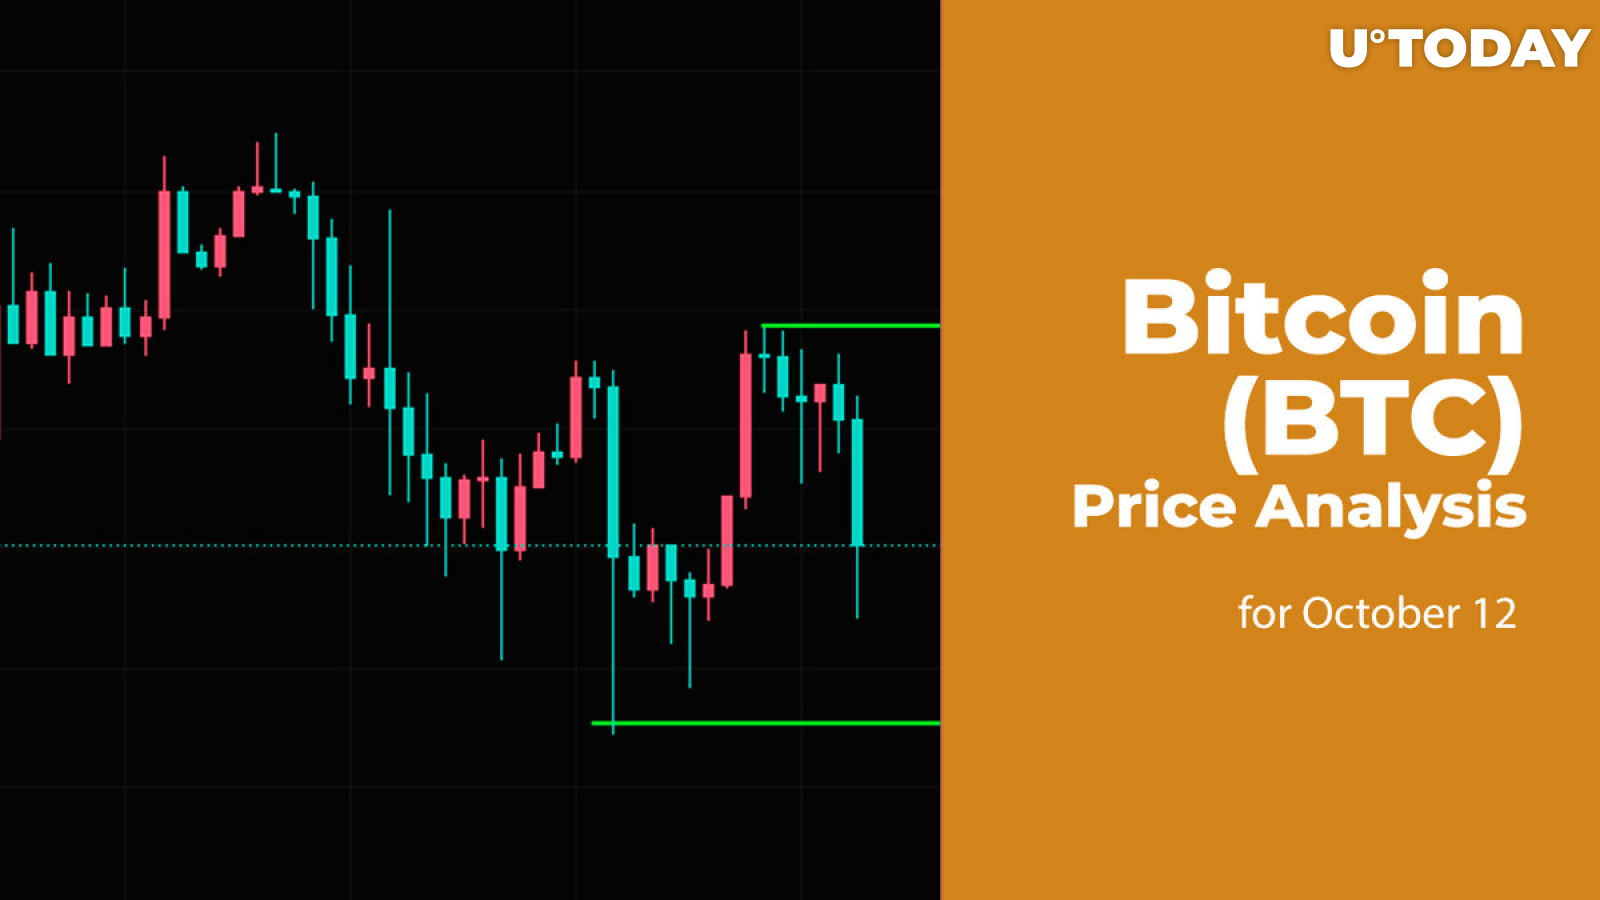 Bitcoin (BTC) Price Analysis for October 12